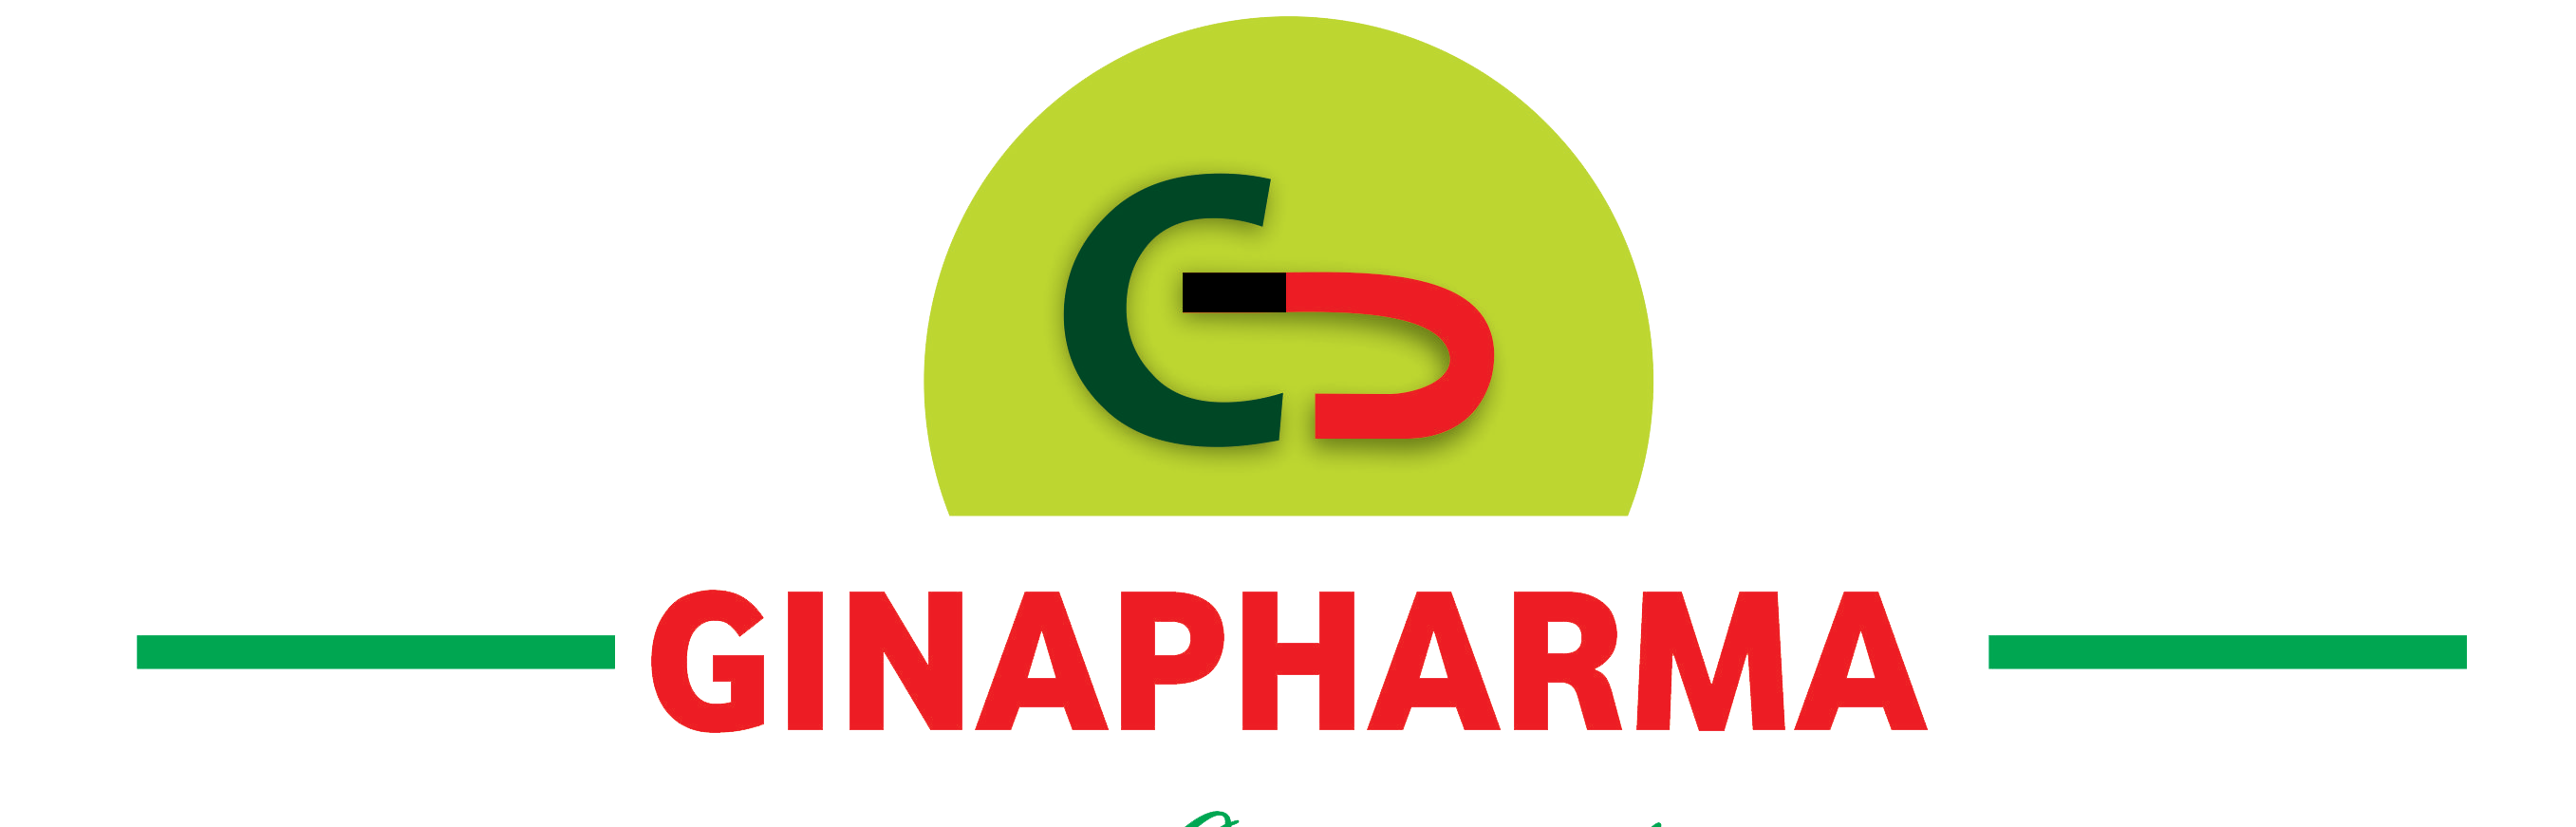 Ginapharma Limited